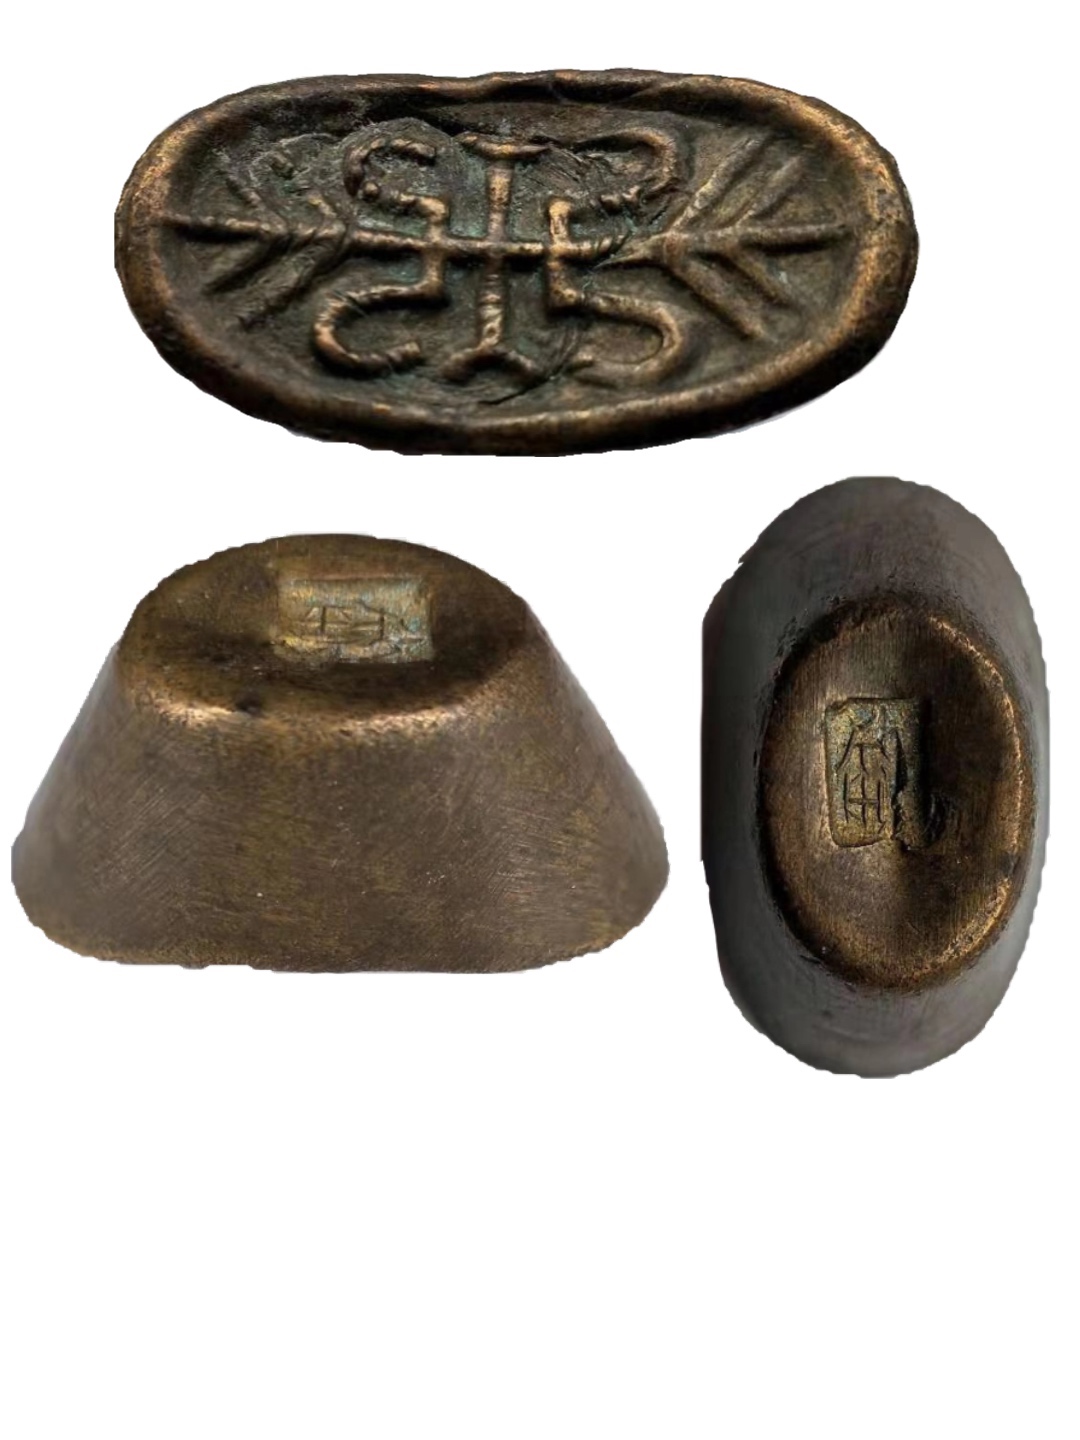 内蒙古哪里有上门收购古钱币买家—青铜器收购联电话